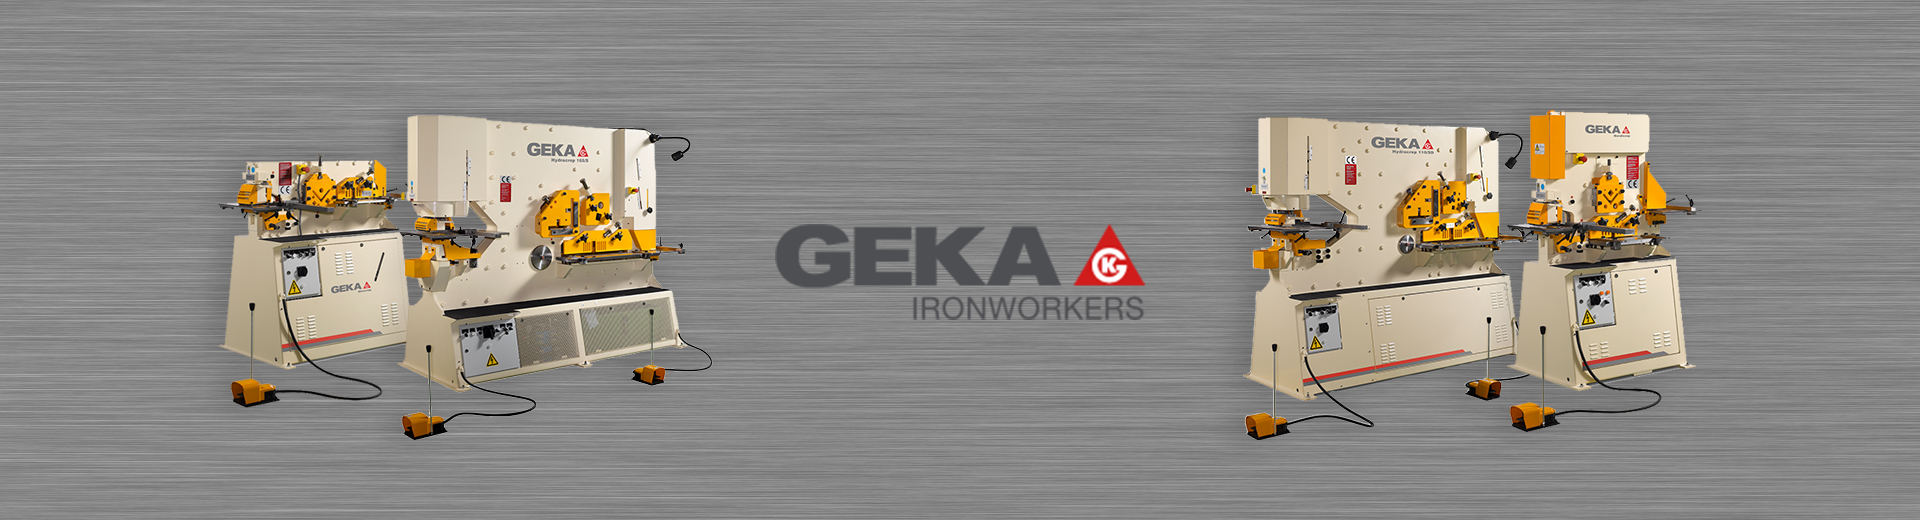 Geka Ironworkers